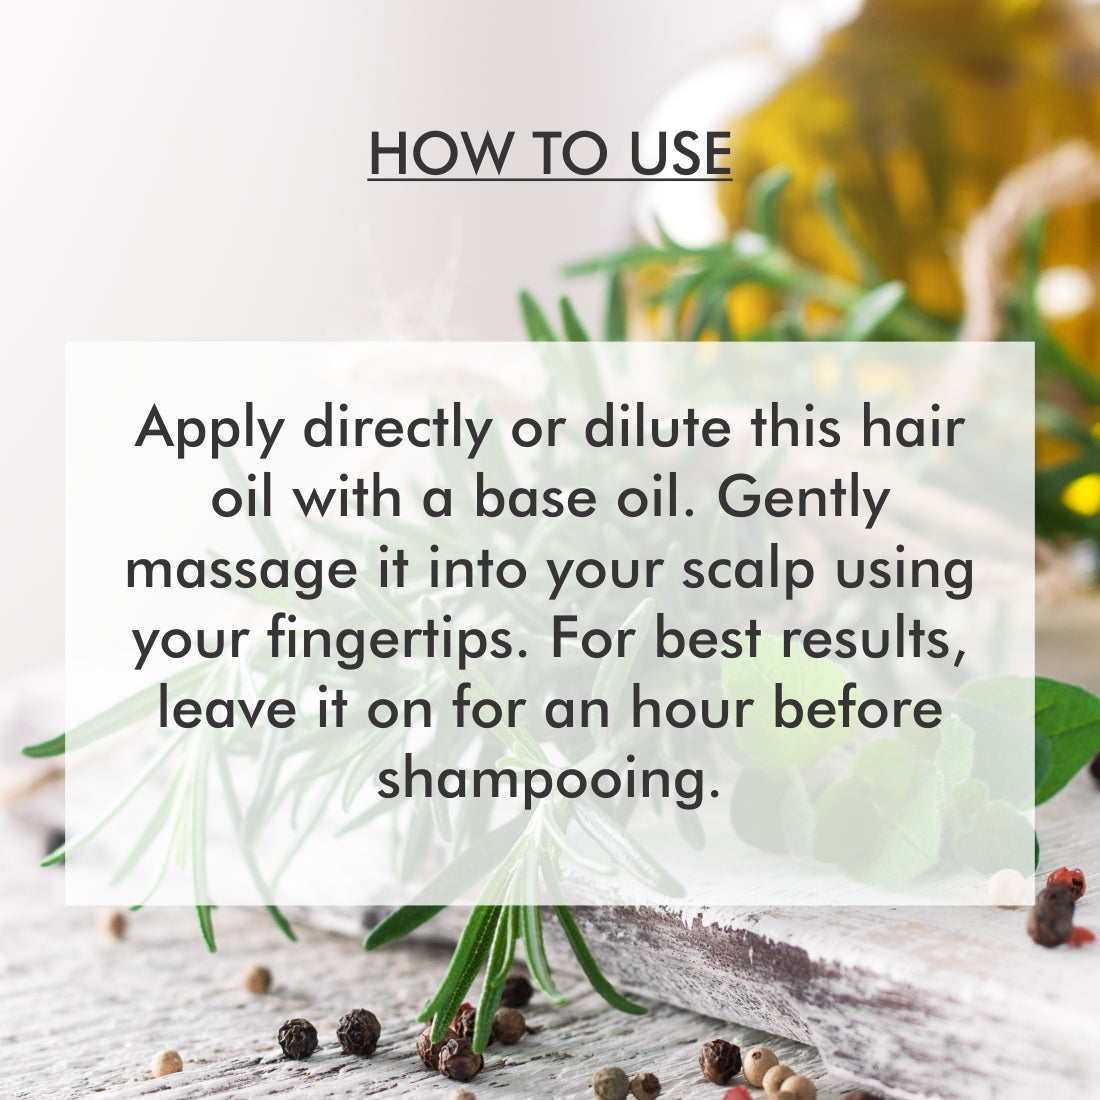 Organic Harvest Hair Oil